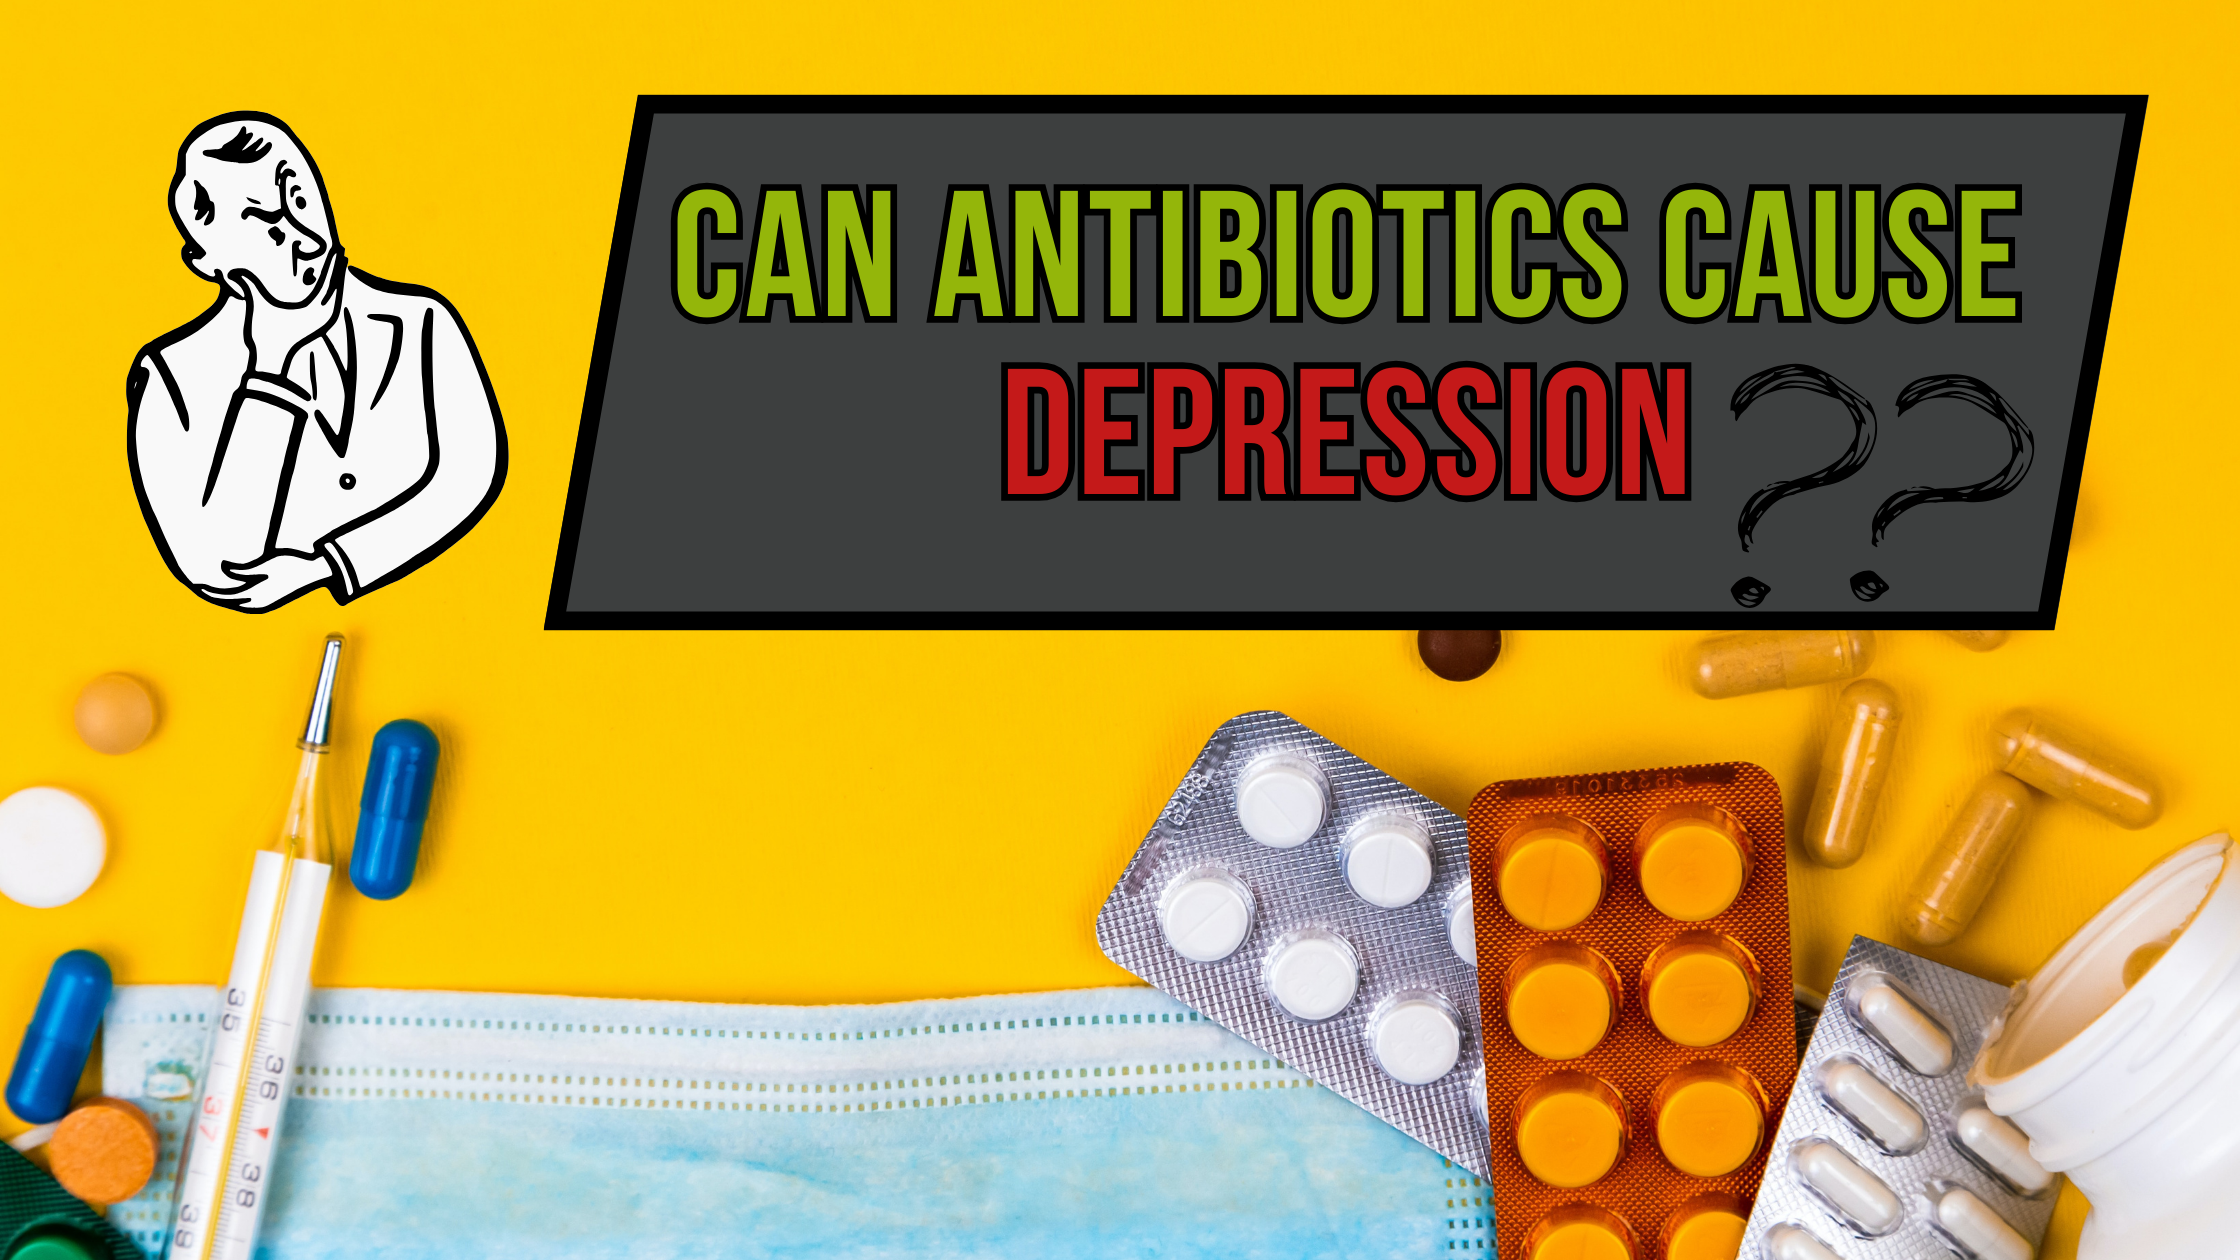 Can antibiotics cause depression